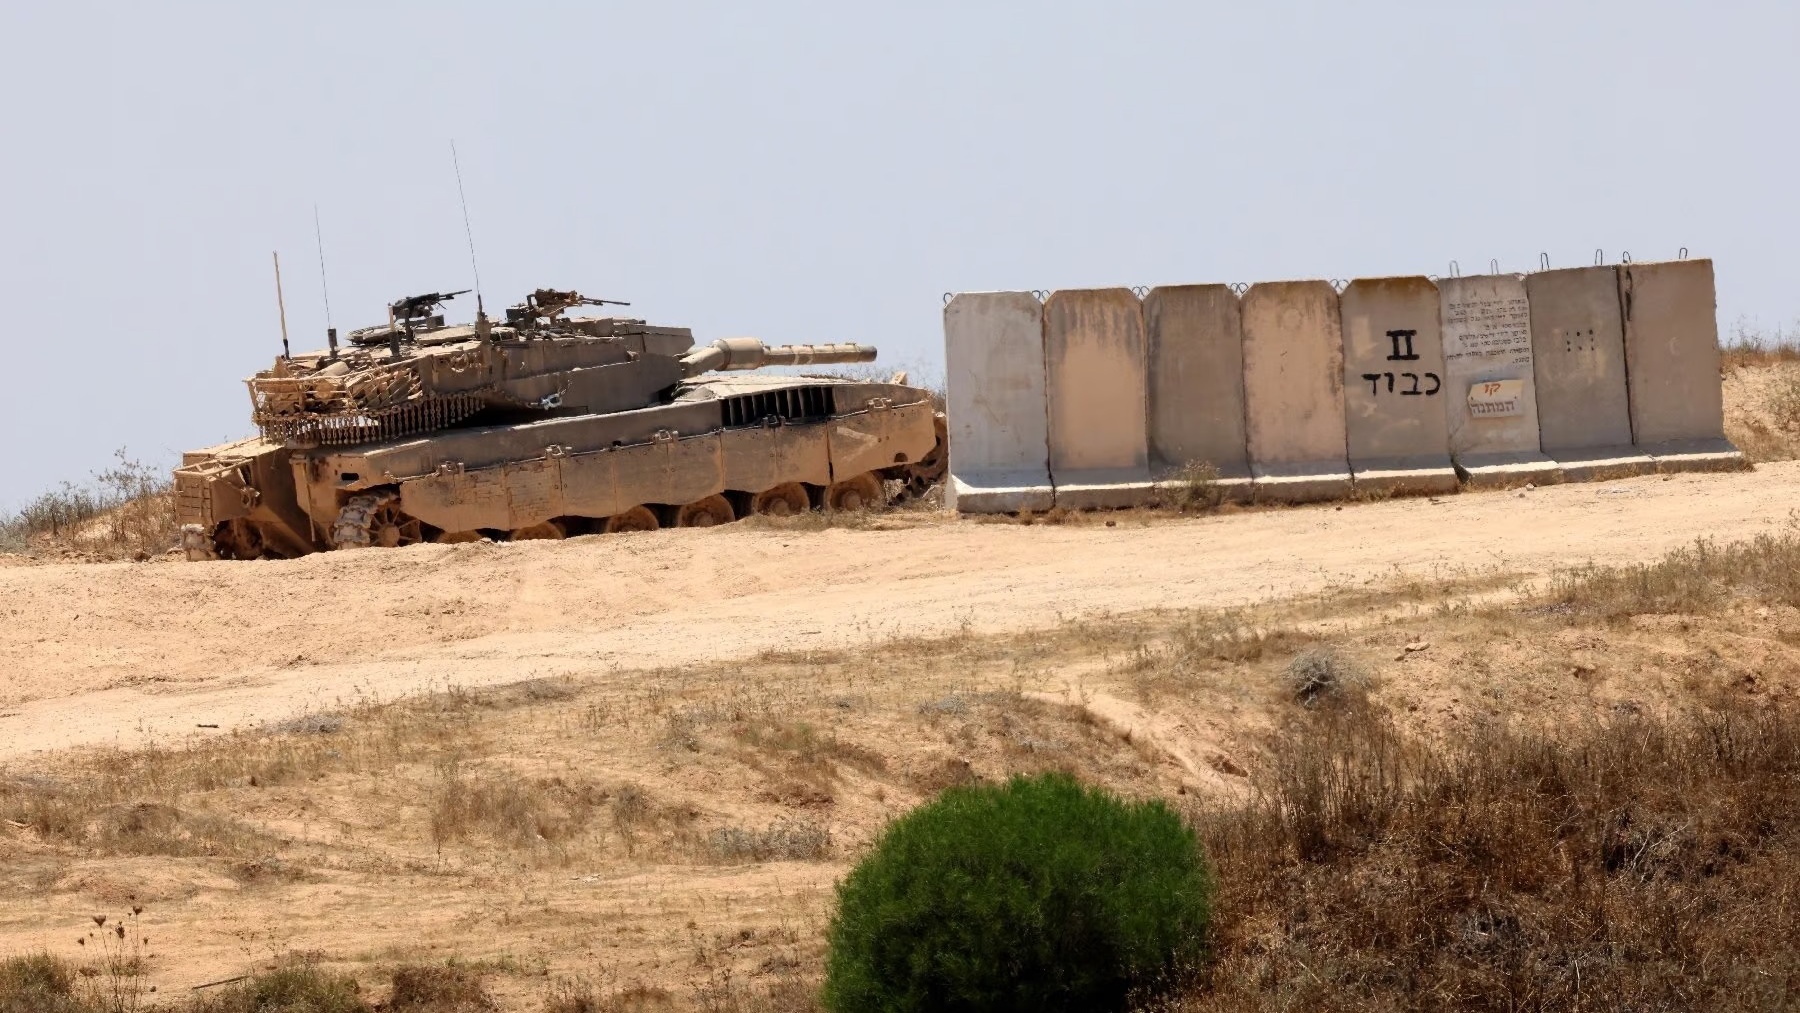 شروط قيادات حماس للهدنة أو وقف إطلاق النار غير واقعية فيما دبابات إسرائيل تصول وتجول في قطاع غزة